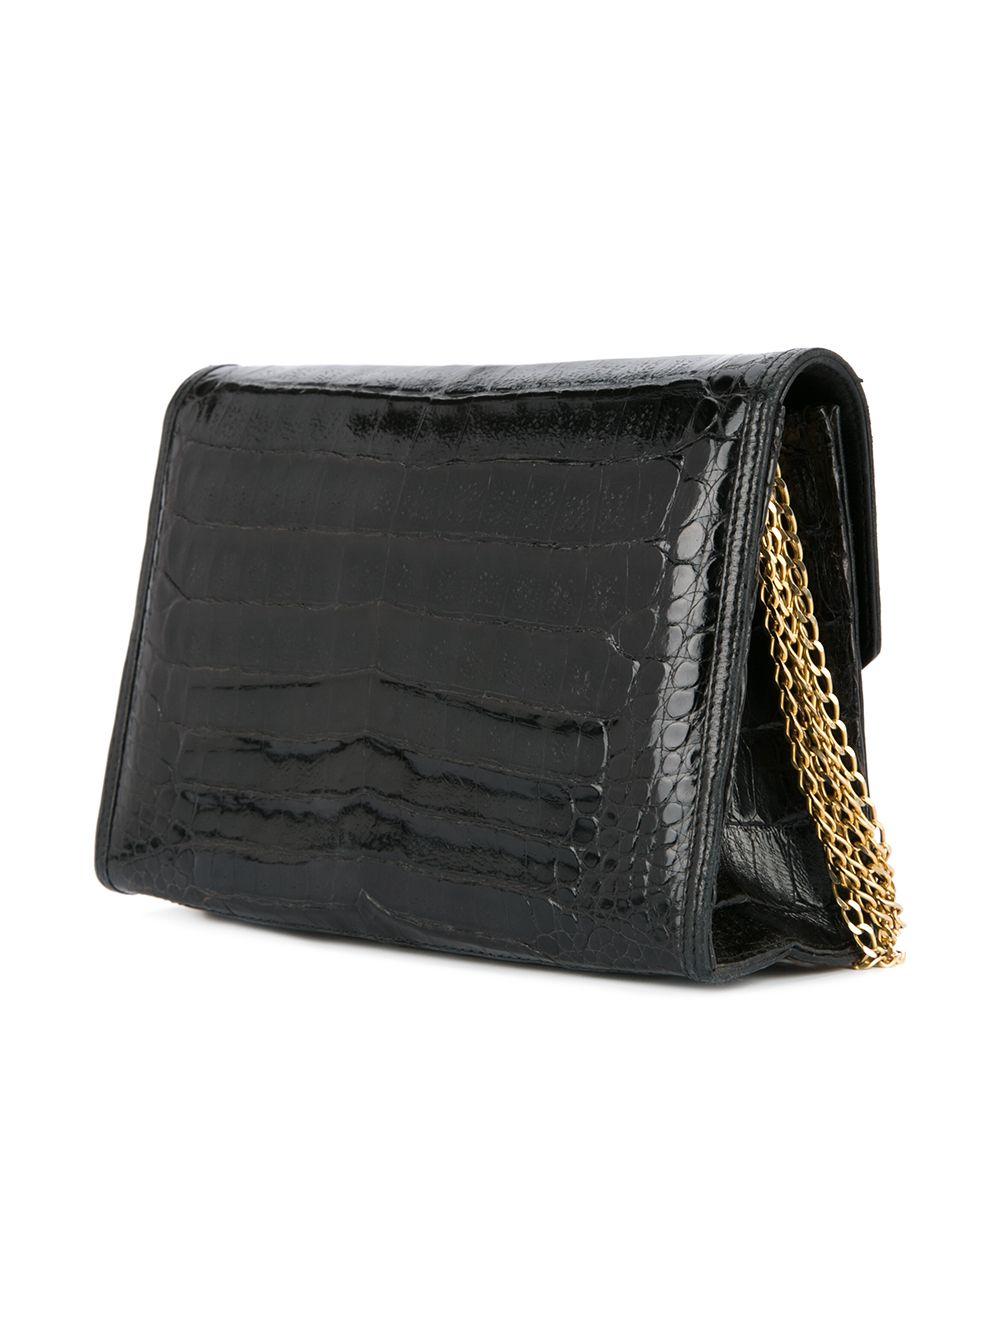 Chanel 1980's Black Classic Crocodile Envelope CC Flap Bag Convertible Clutch  For Sale 6